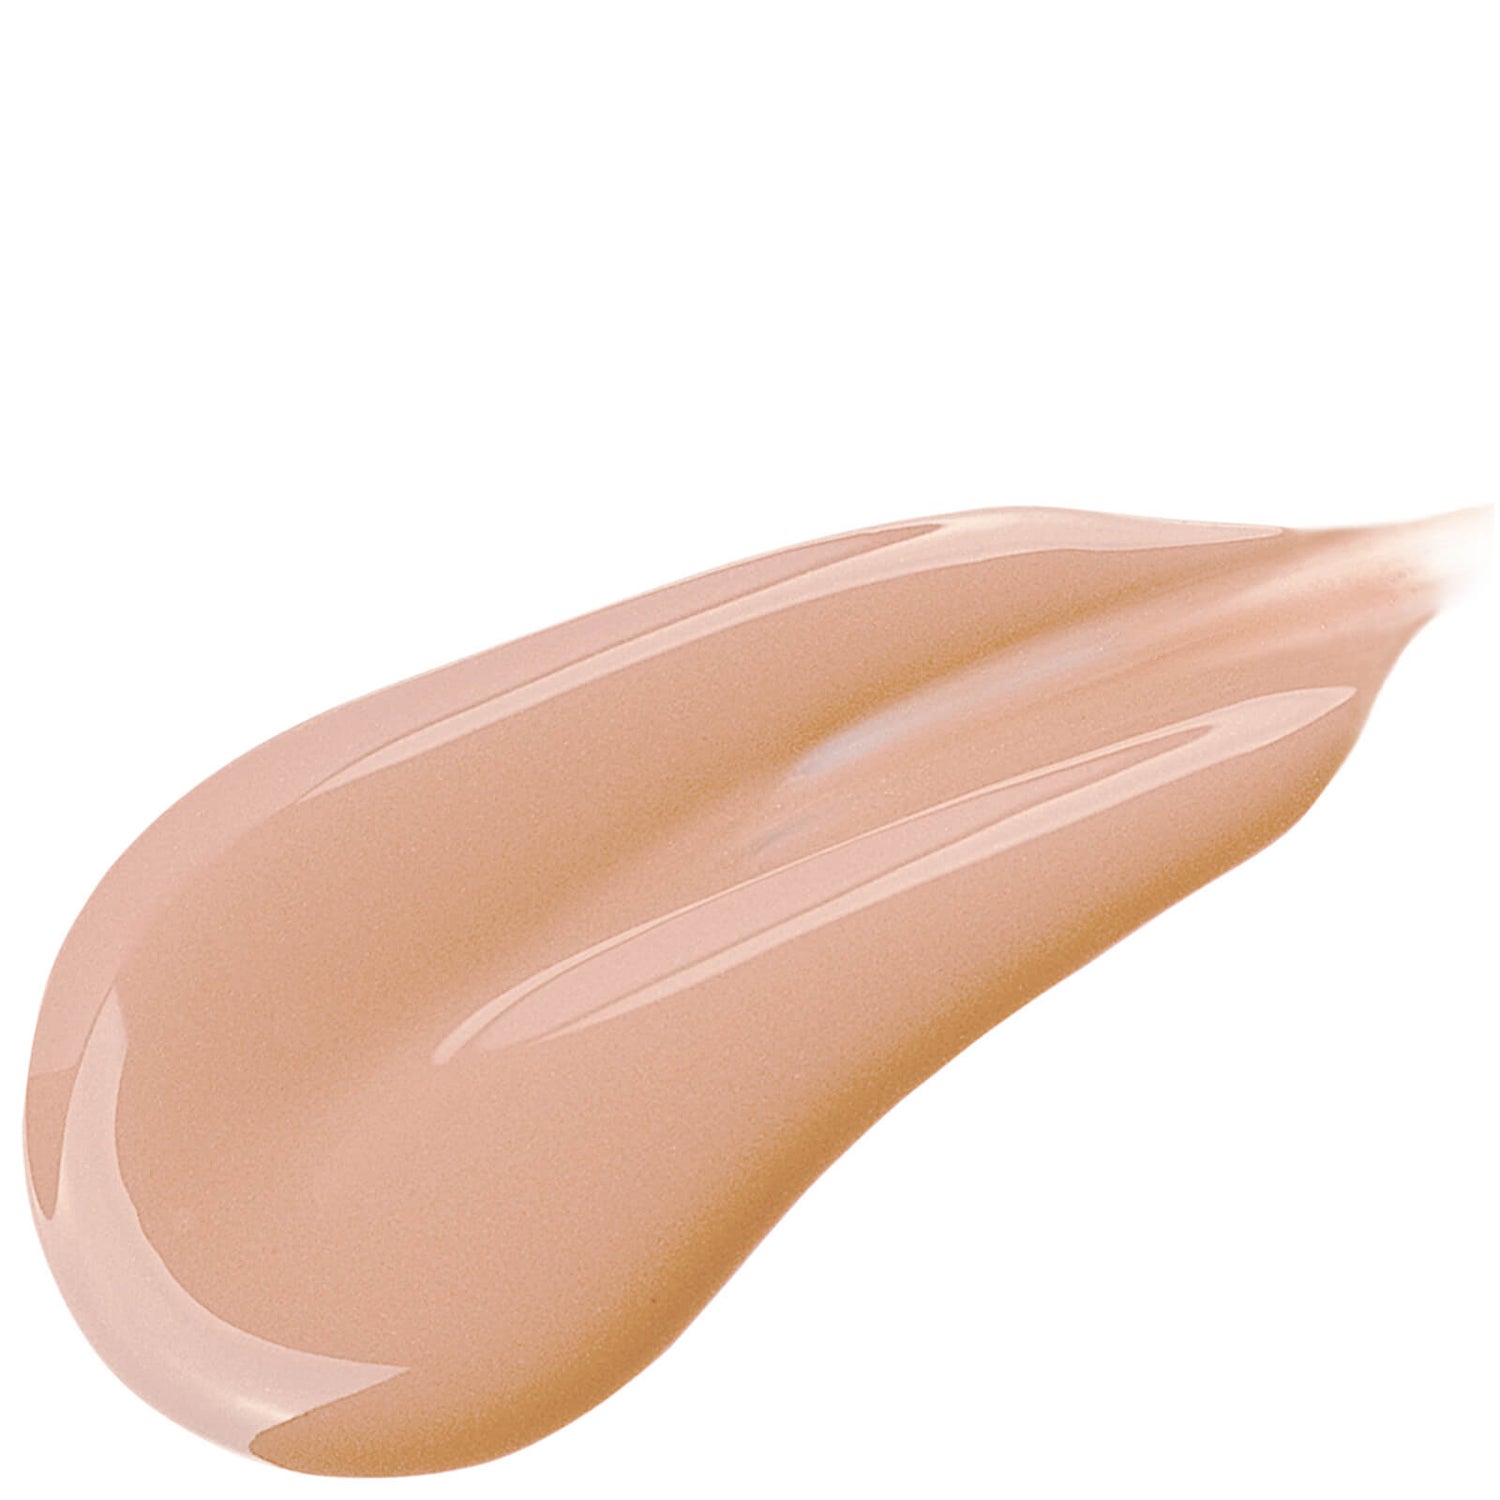 Filorga Flash Nude Fluid Foundation 30ml (Various Shades) - 1.5 Nude Medium